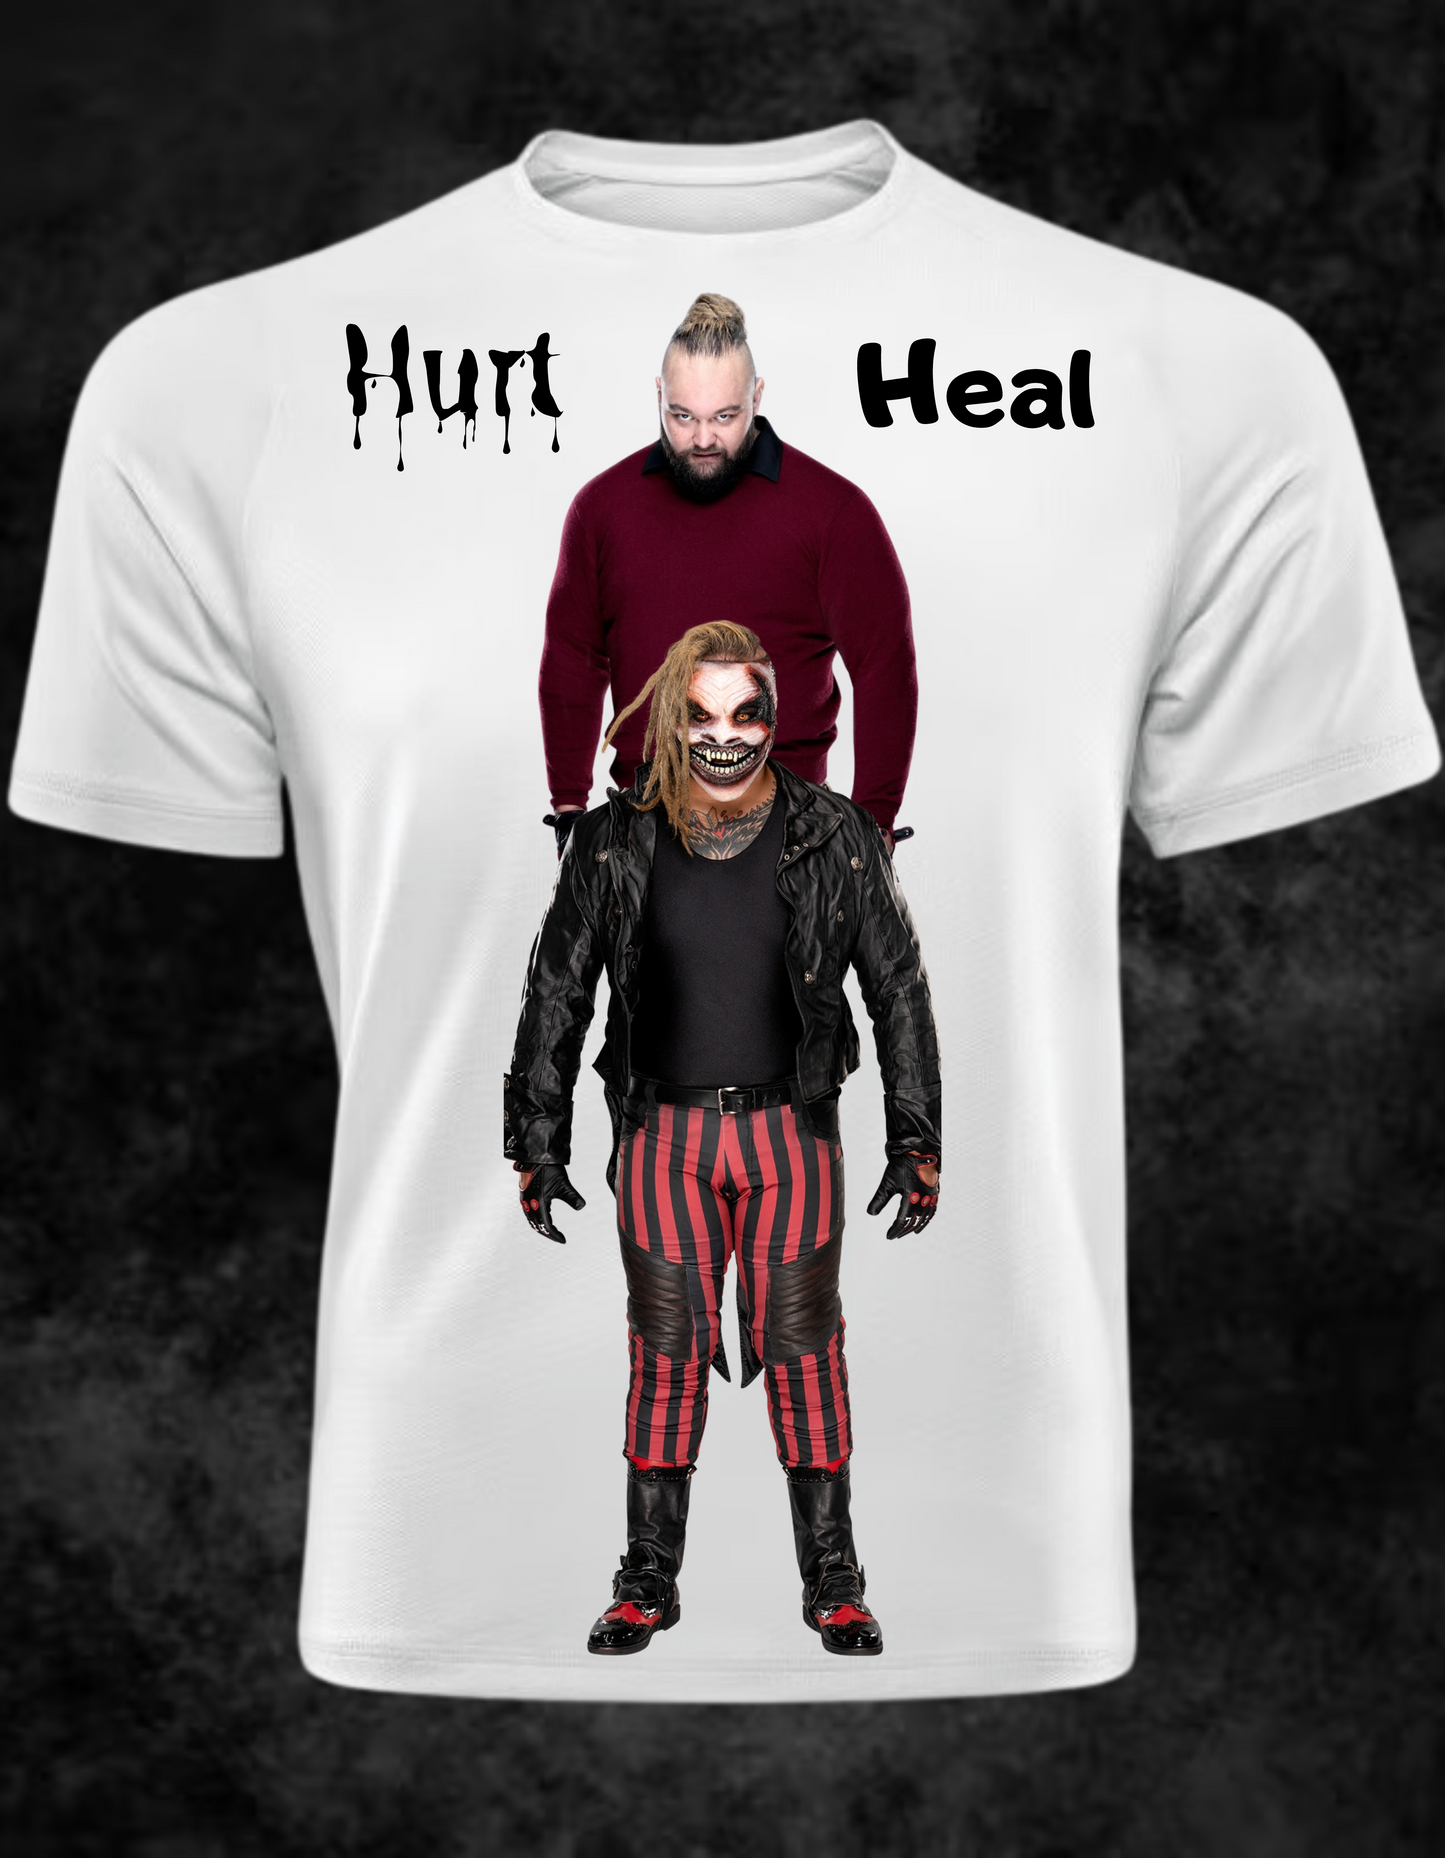 "Bray Wyatt Hurt/Heal WWE T-Shirt"